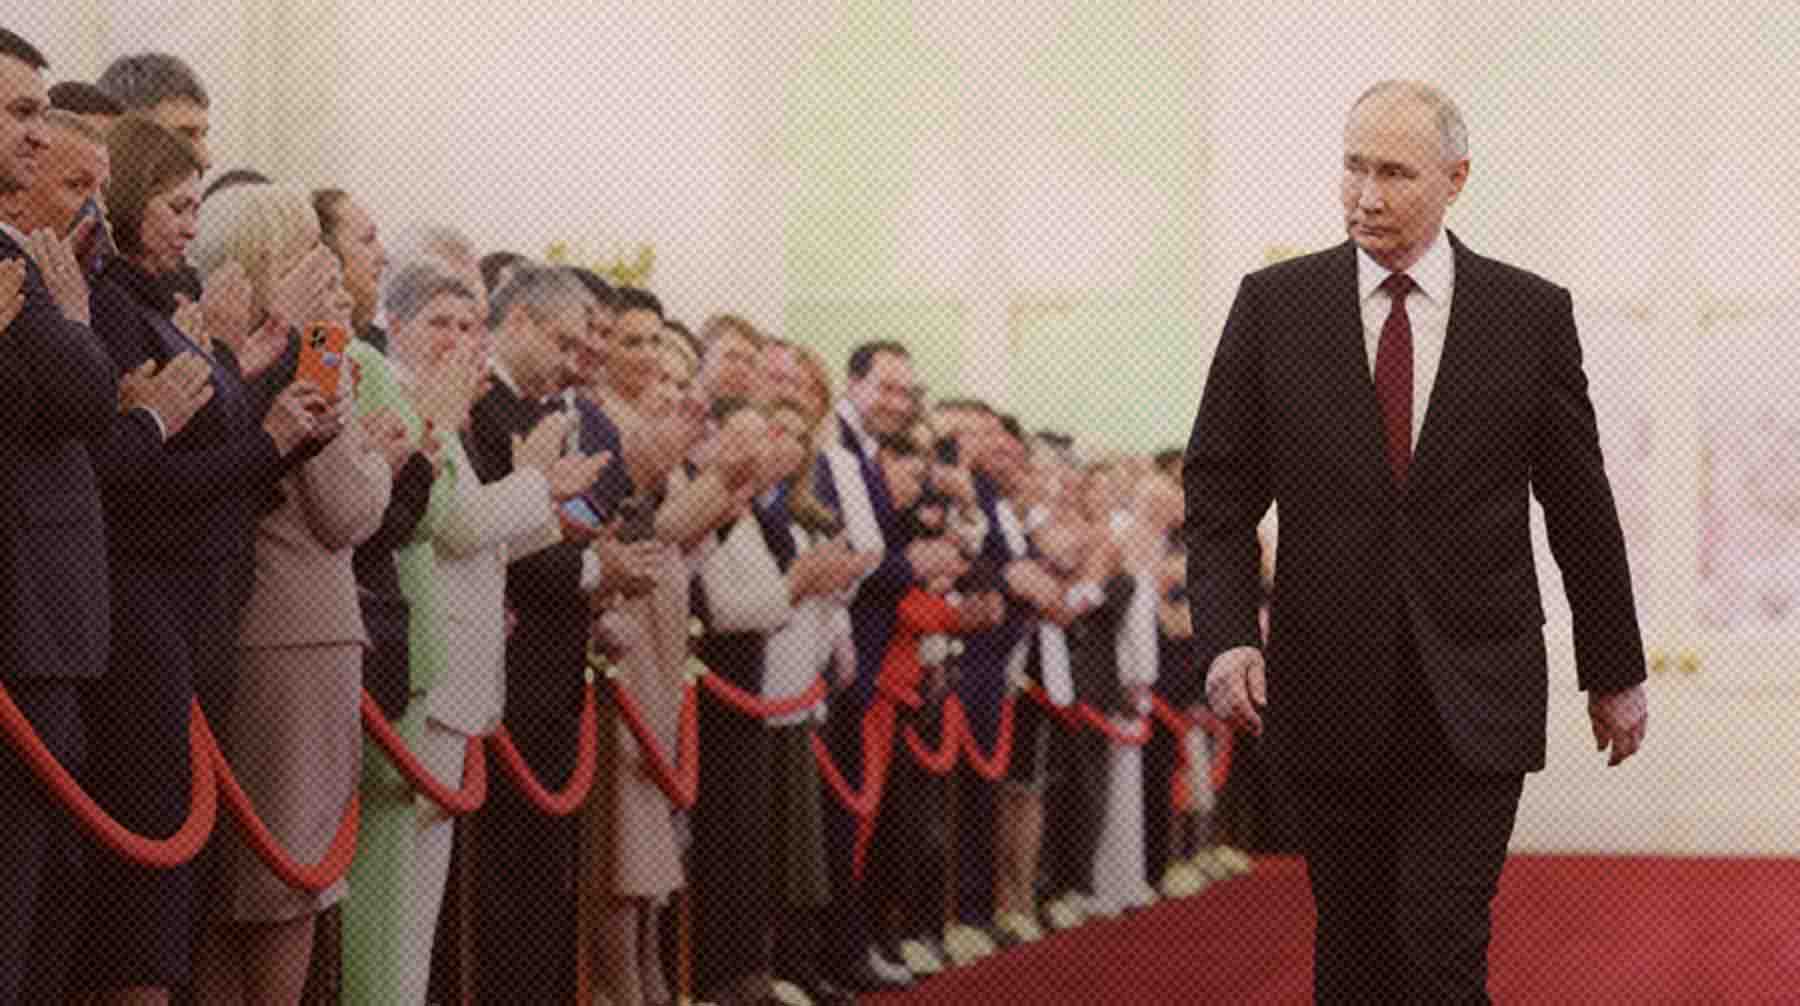 Президент, избранный на новый шестилетний срок, пообещал, что интересы и безопасность народа будут для него превыше всего Избранный президент РФ Владимир Путин перед началом церемонии инаугурации в Кремле